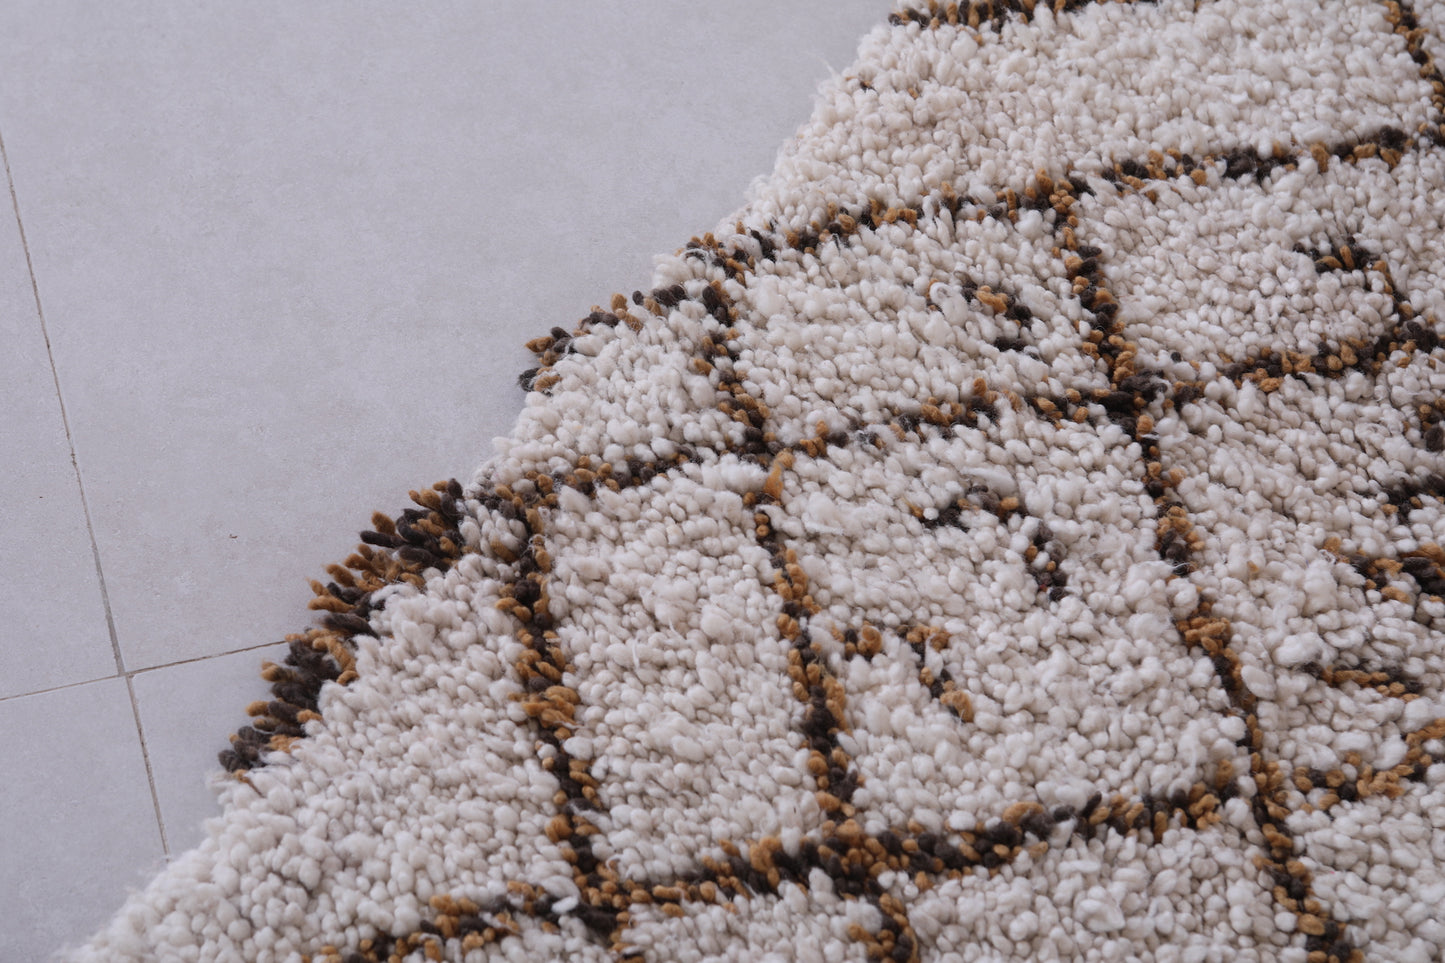 Vintage handmade moroccan berber runner rug 3.1 FT X 5.7 FT